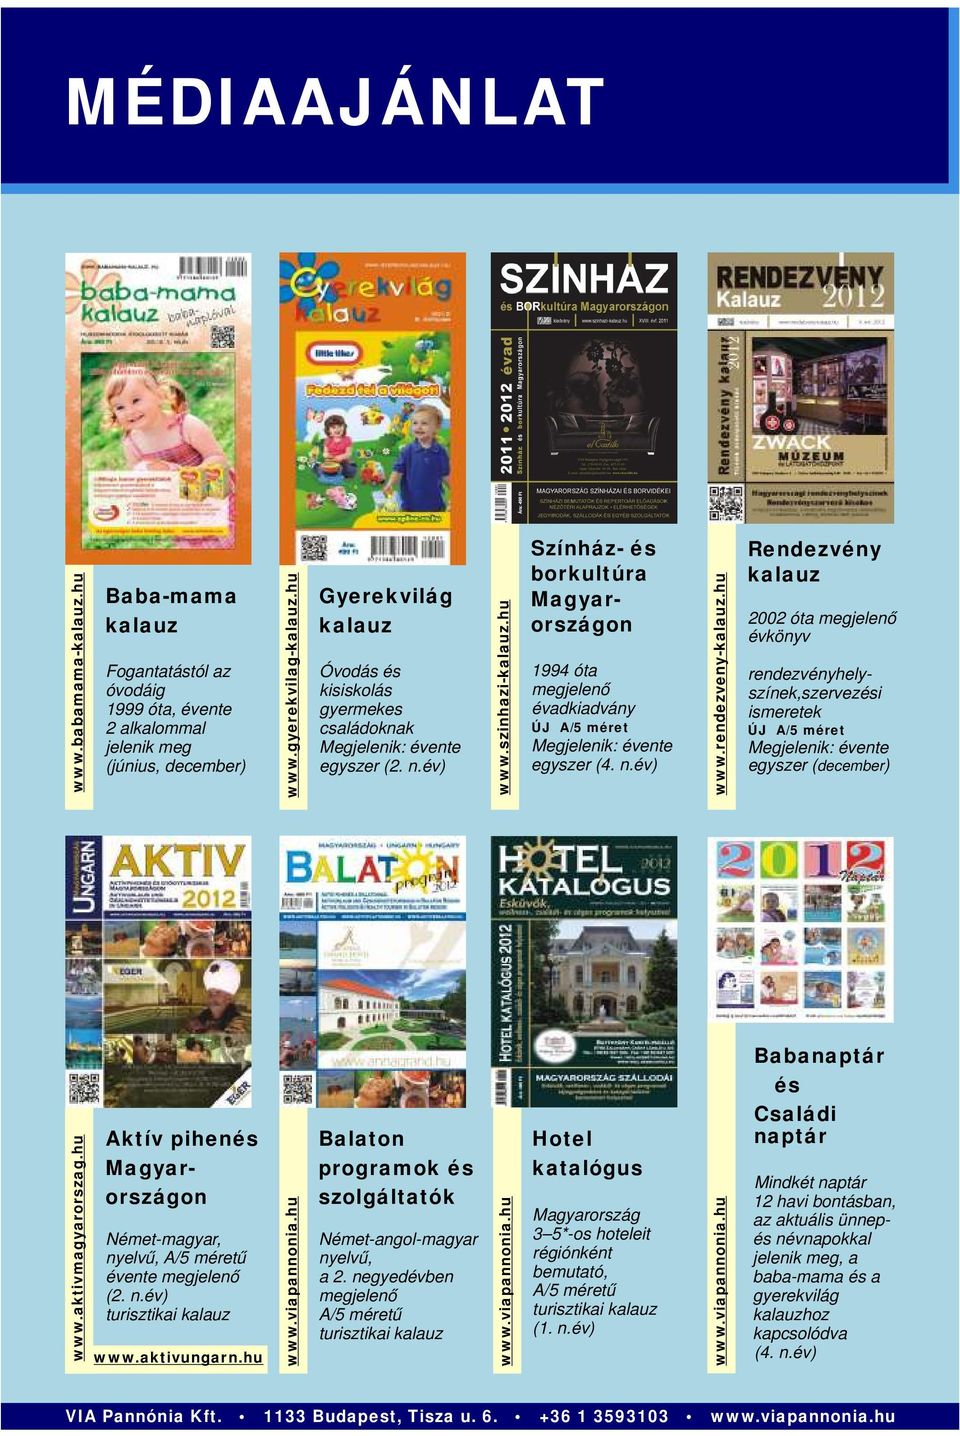 hu Színház- és borkultúra Magyarországon 1994 óta megjelenő évadkiadvány ÚJ A/5 méret Megjelenik: évente egyszer (4. n.év) www.rendezveny-kalauz.